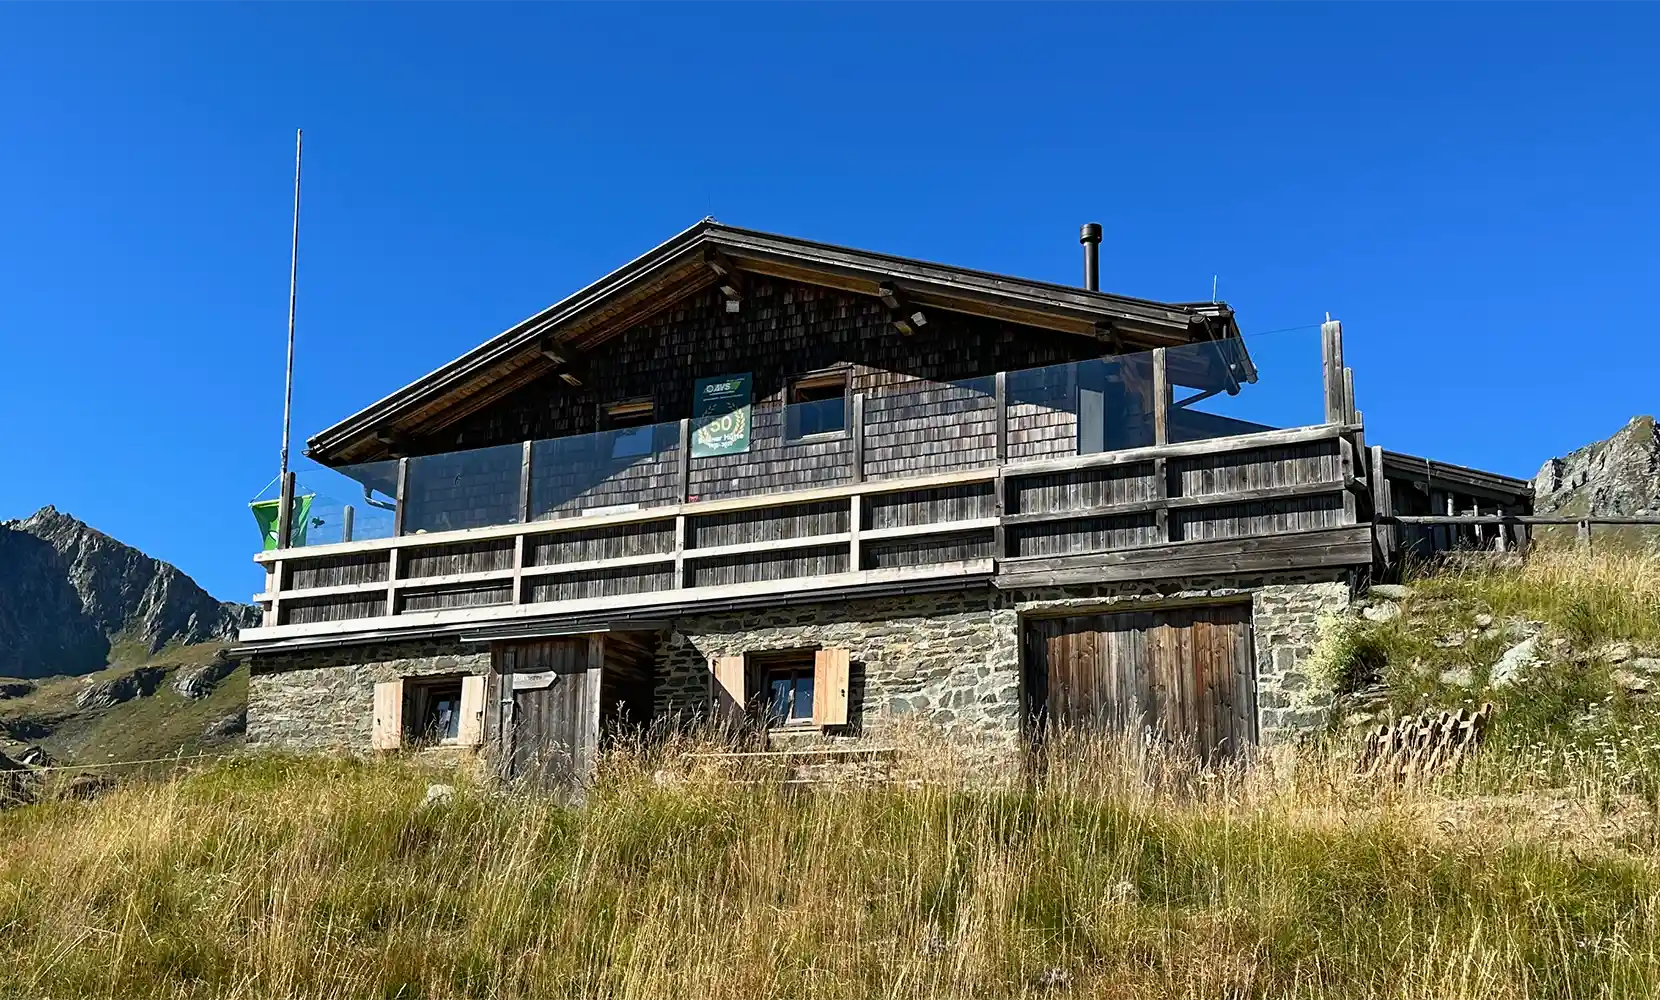 Brixner Hütte